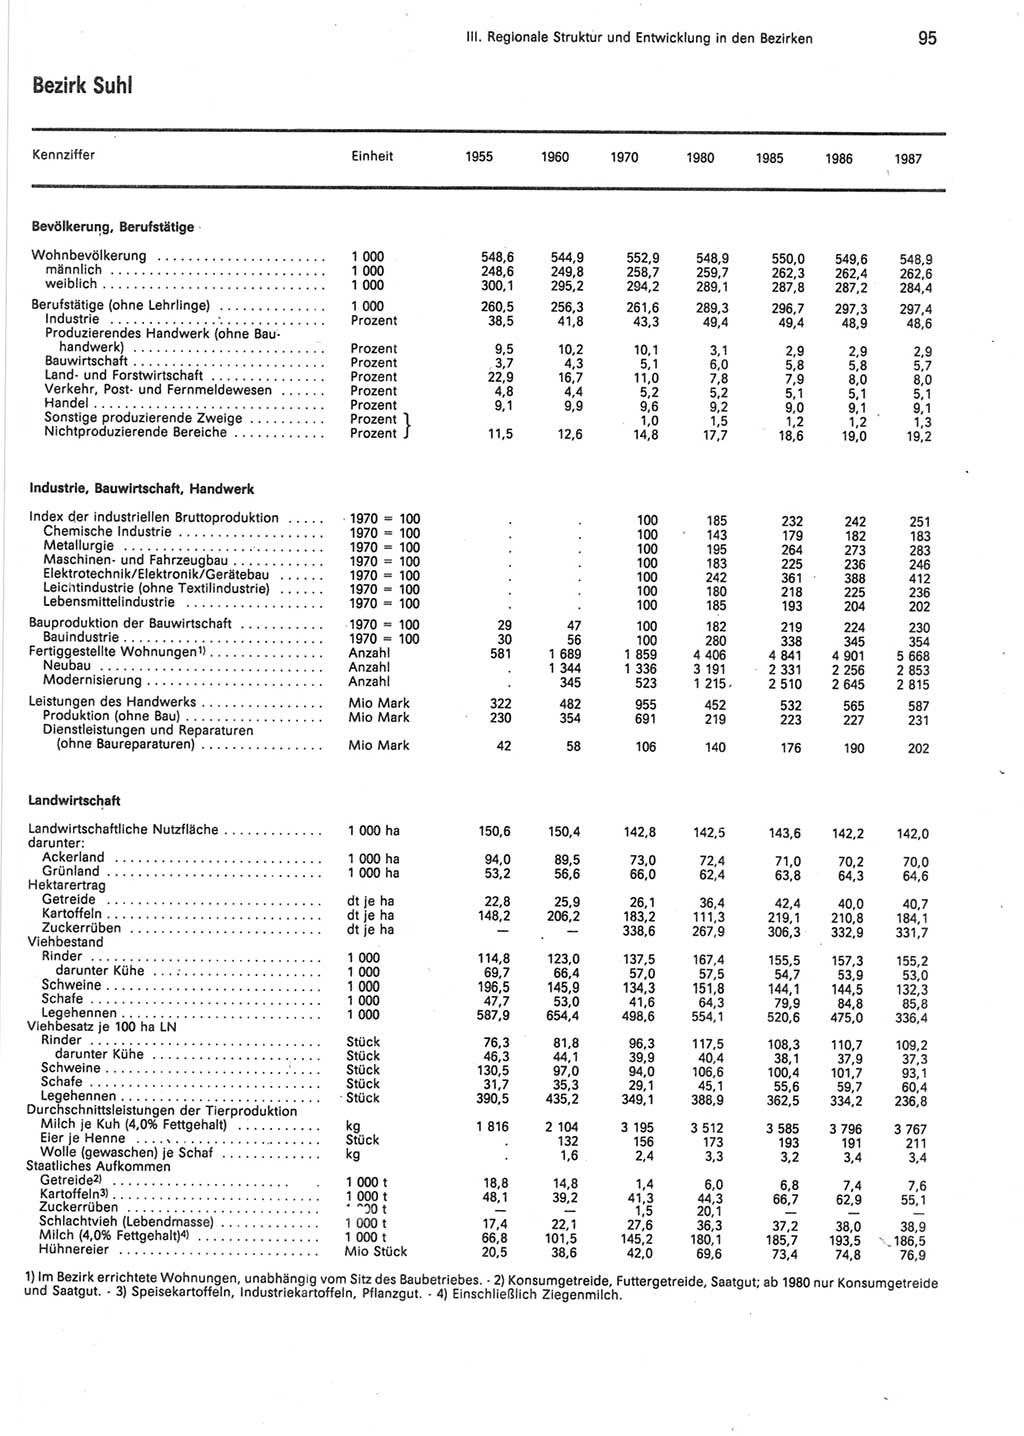 Statistisches Jahrbuch der Deutschen Demokratischen Republik (DDR) 1988, Seite 95 (Stat. Jb. DDR 1988, S. 95)